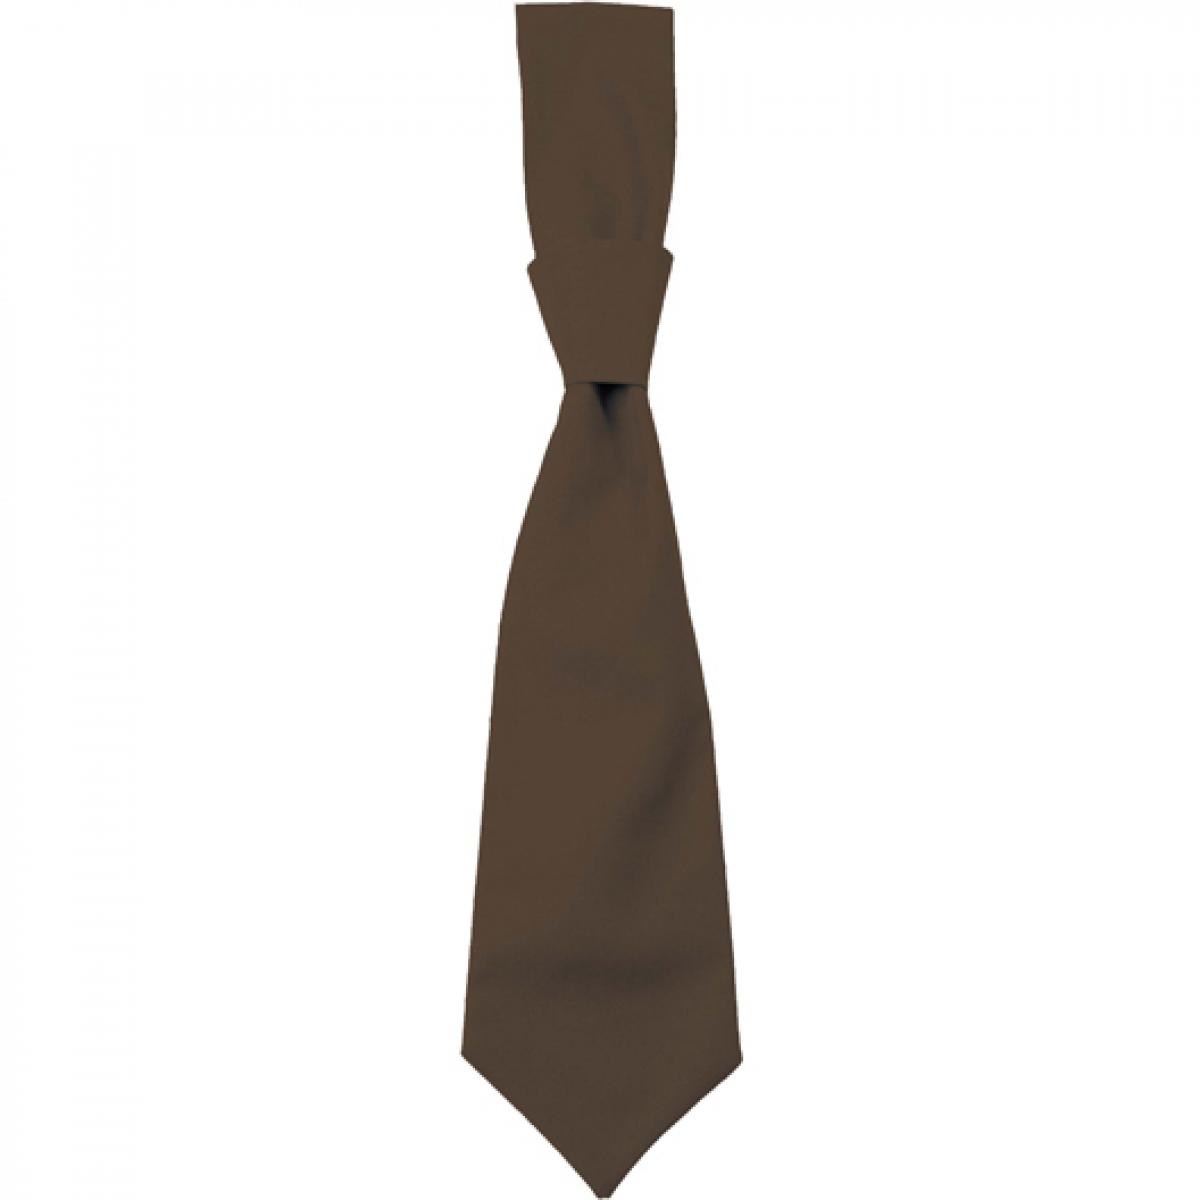 Hersteller: CG Workwear Herstellernummer: 01360-01 Artikelbezeichnung: Krawatte Messina / Zertifiziert nach Oeko-Tex 100 Farbe: Taupe